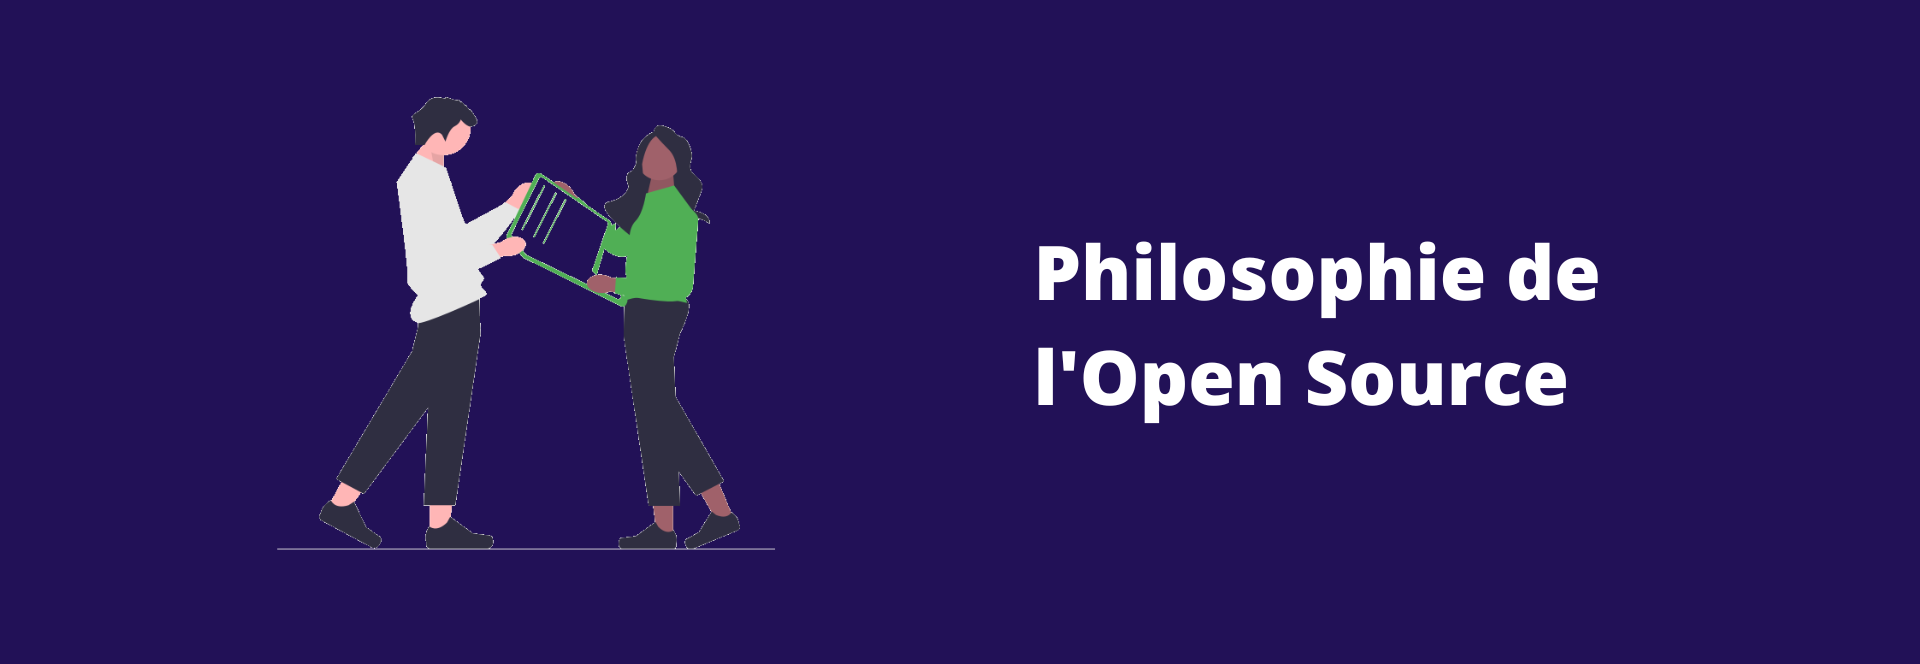 philosophie_open_source bandeau